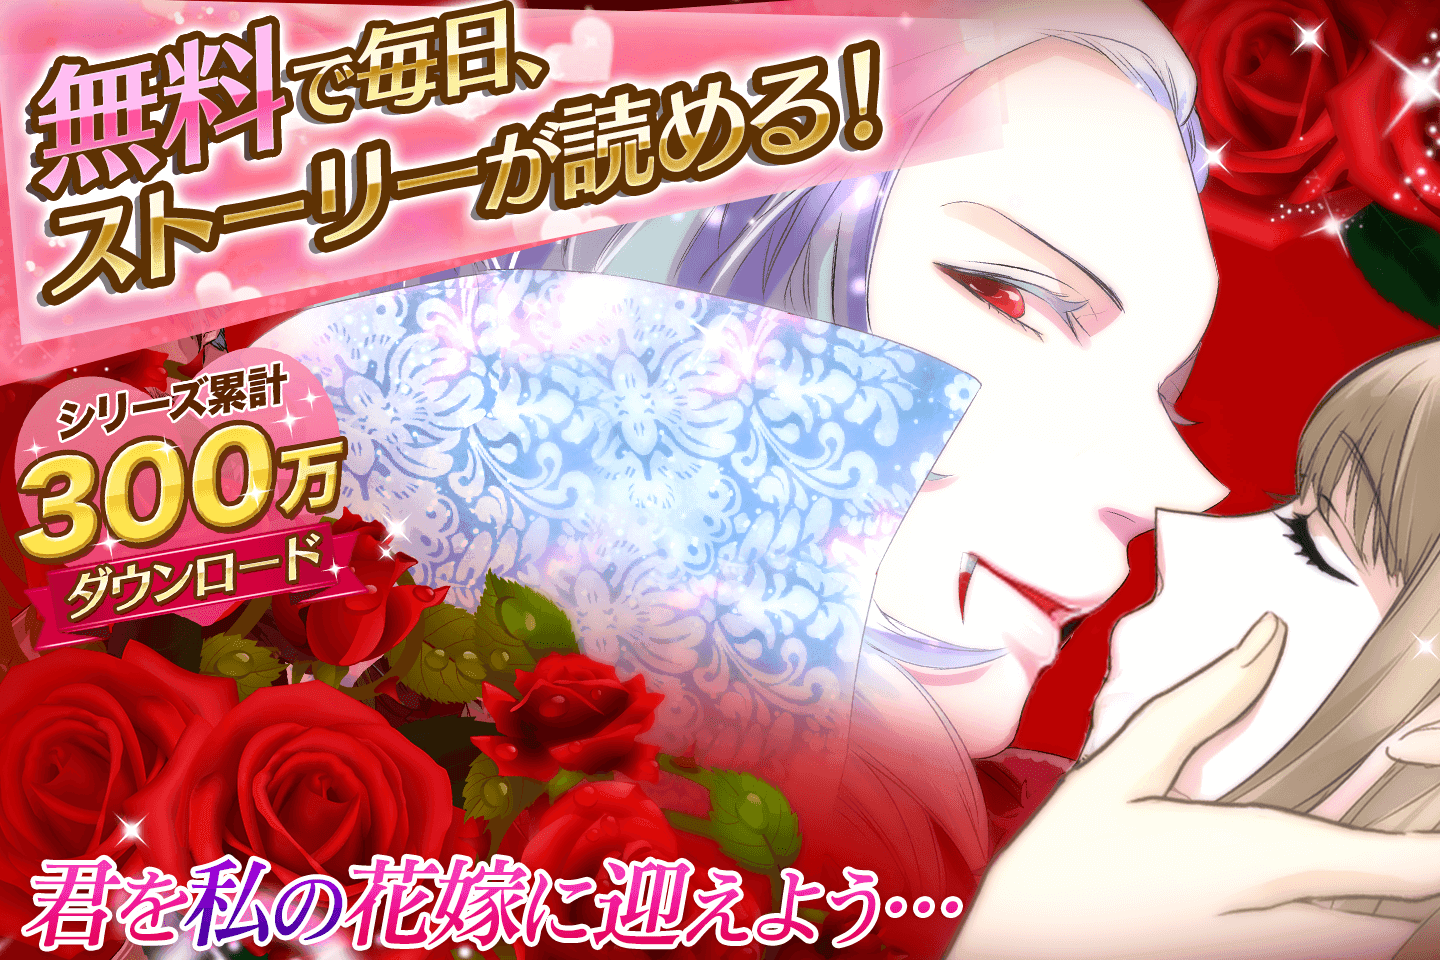 Screenshot 1 of Vampire Kiss Jeu de romance gratuit pour les femmes ! Jeu Otome populaire 1.6.1